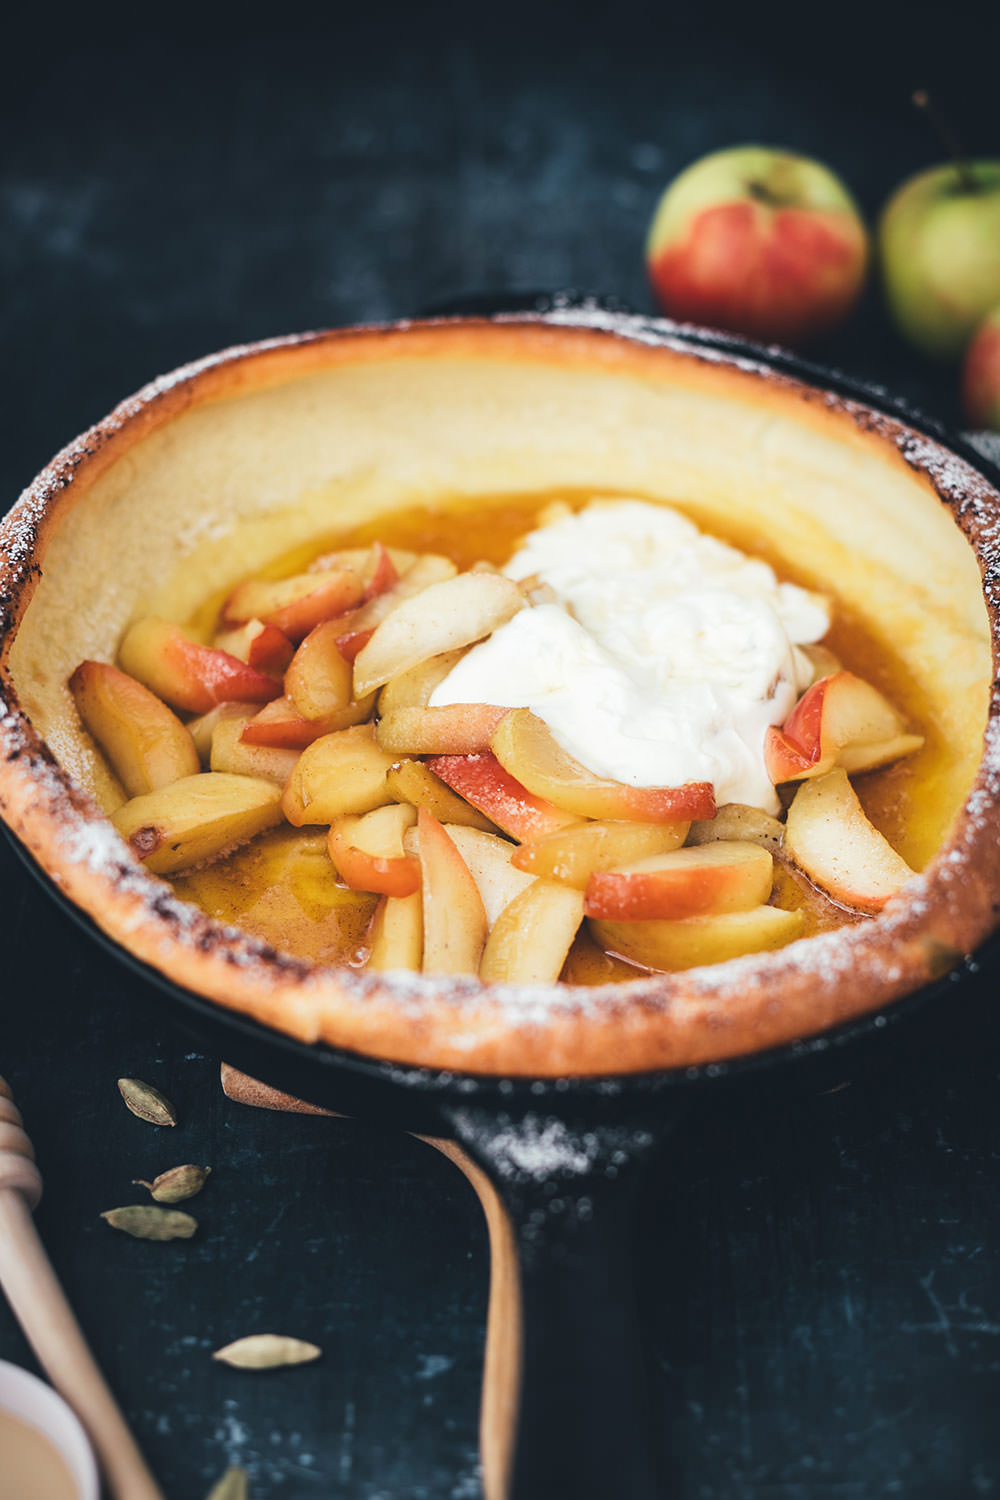 Rezept für Ofenpfannkuchen zum Sonntagsfrühstück | Dutch Baby Pancake mit Honig-Äpfeln und Crème fraîche | moeyskitchen.com #ofenpfannkuchen #dutchbaby #dutchbabypancake #pfannkuchen #pancake #frühstück #sonntagsfrühstück #foodblog #rezept #backen #äpfel #herbst